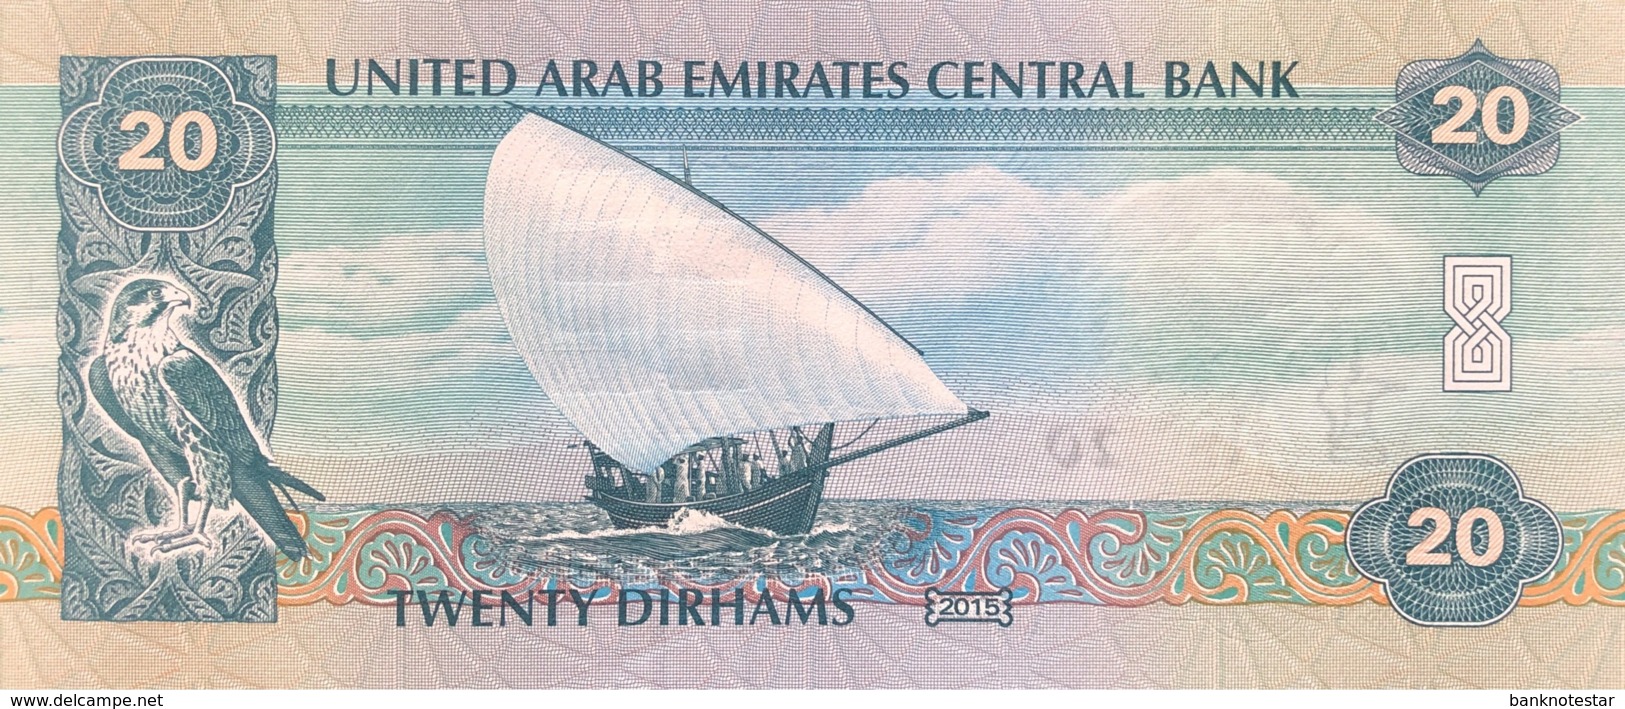 United Arab Emirates 20 Dirham, P-28 (2015) - UNC - Ver. Arab. Emirate